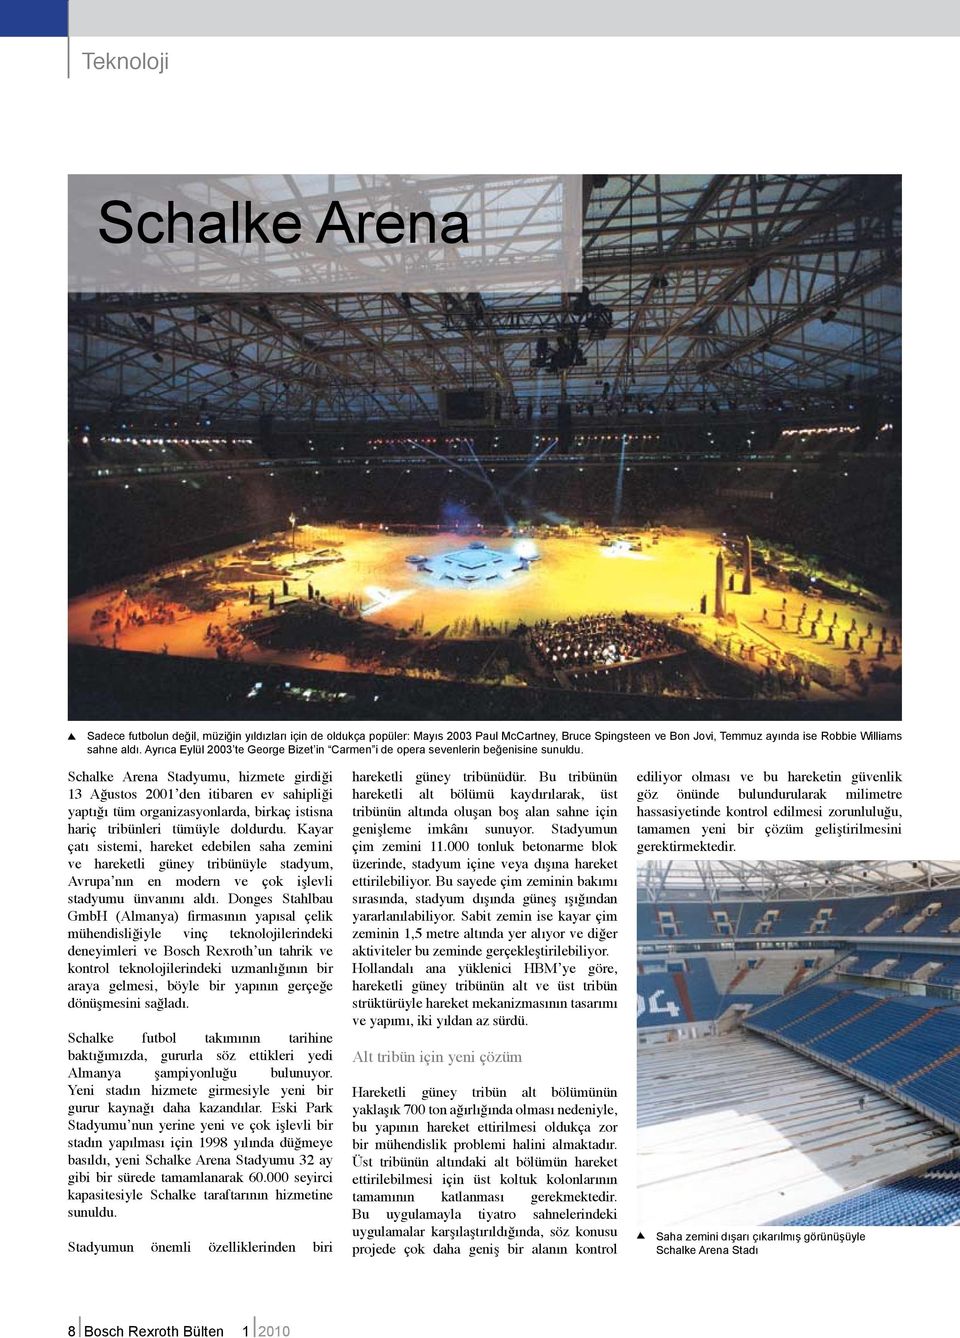 Schalke Arena Stadyumu, hizmete girdiği 13 Ağustos 2001 den itibaren ev sahipliği yaptığı tüm organizasyonlarda, birkaç istisna hariç tribünleri tümüyle doldurdu.